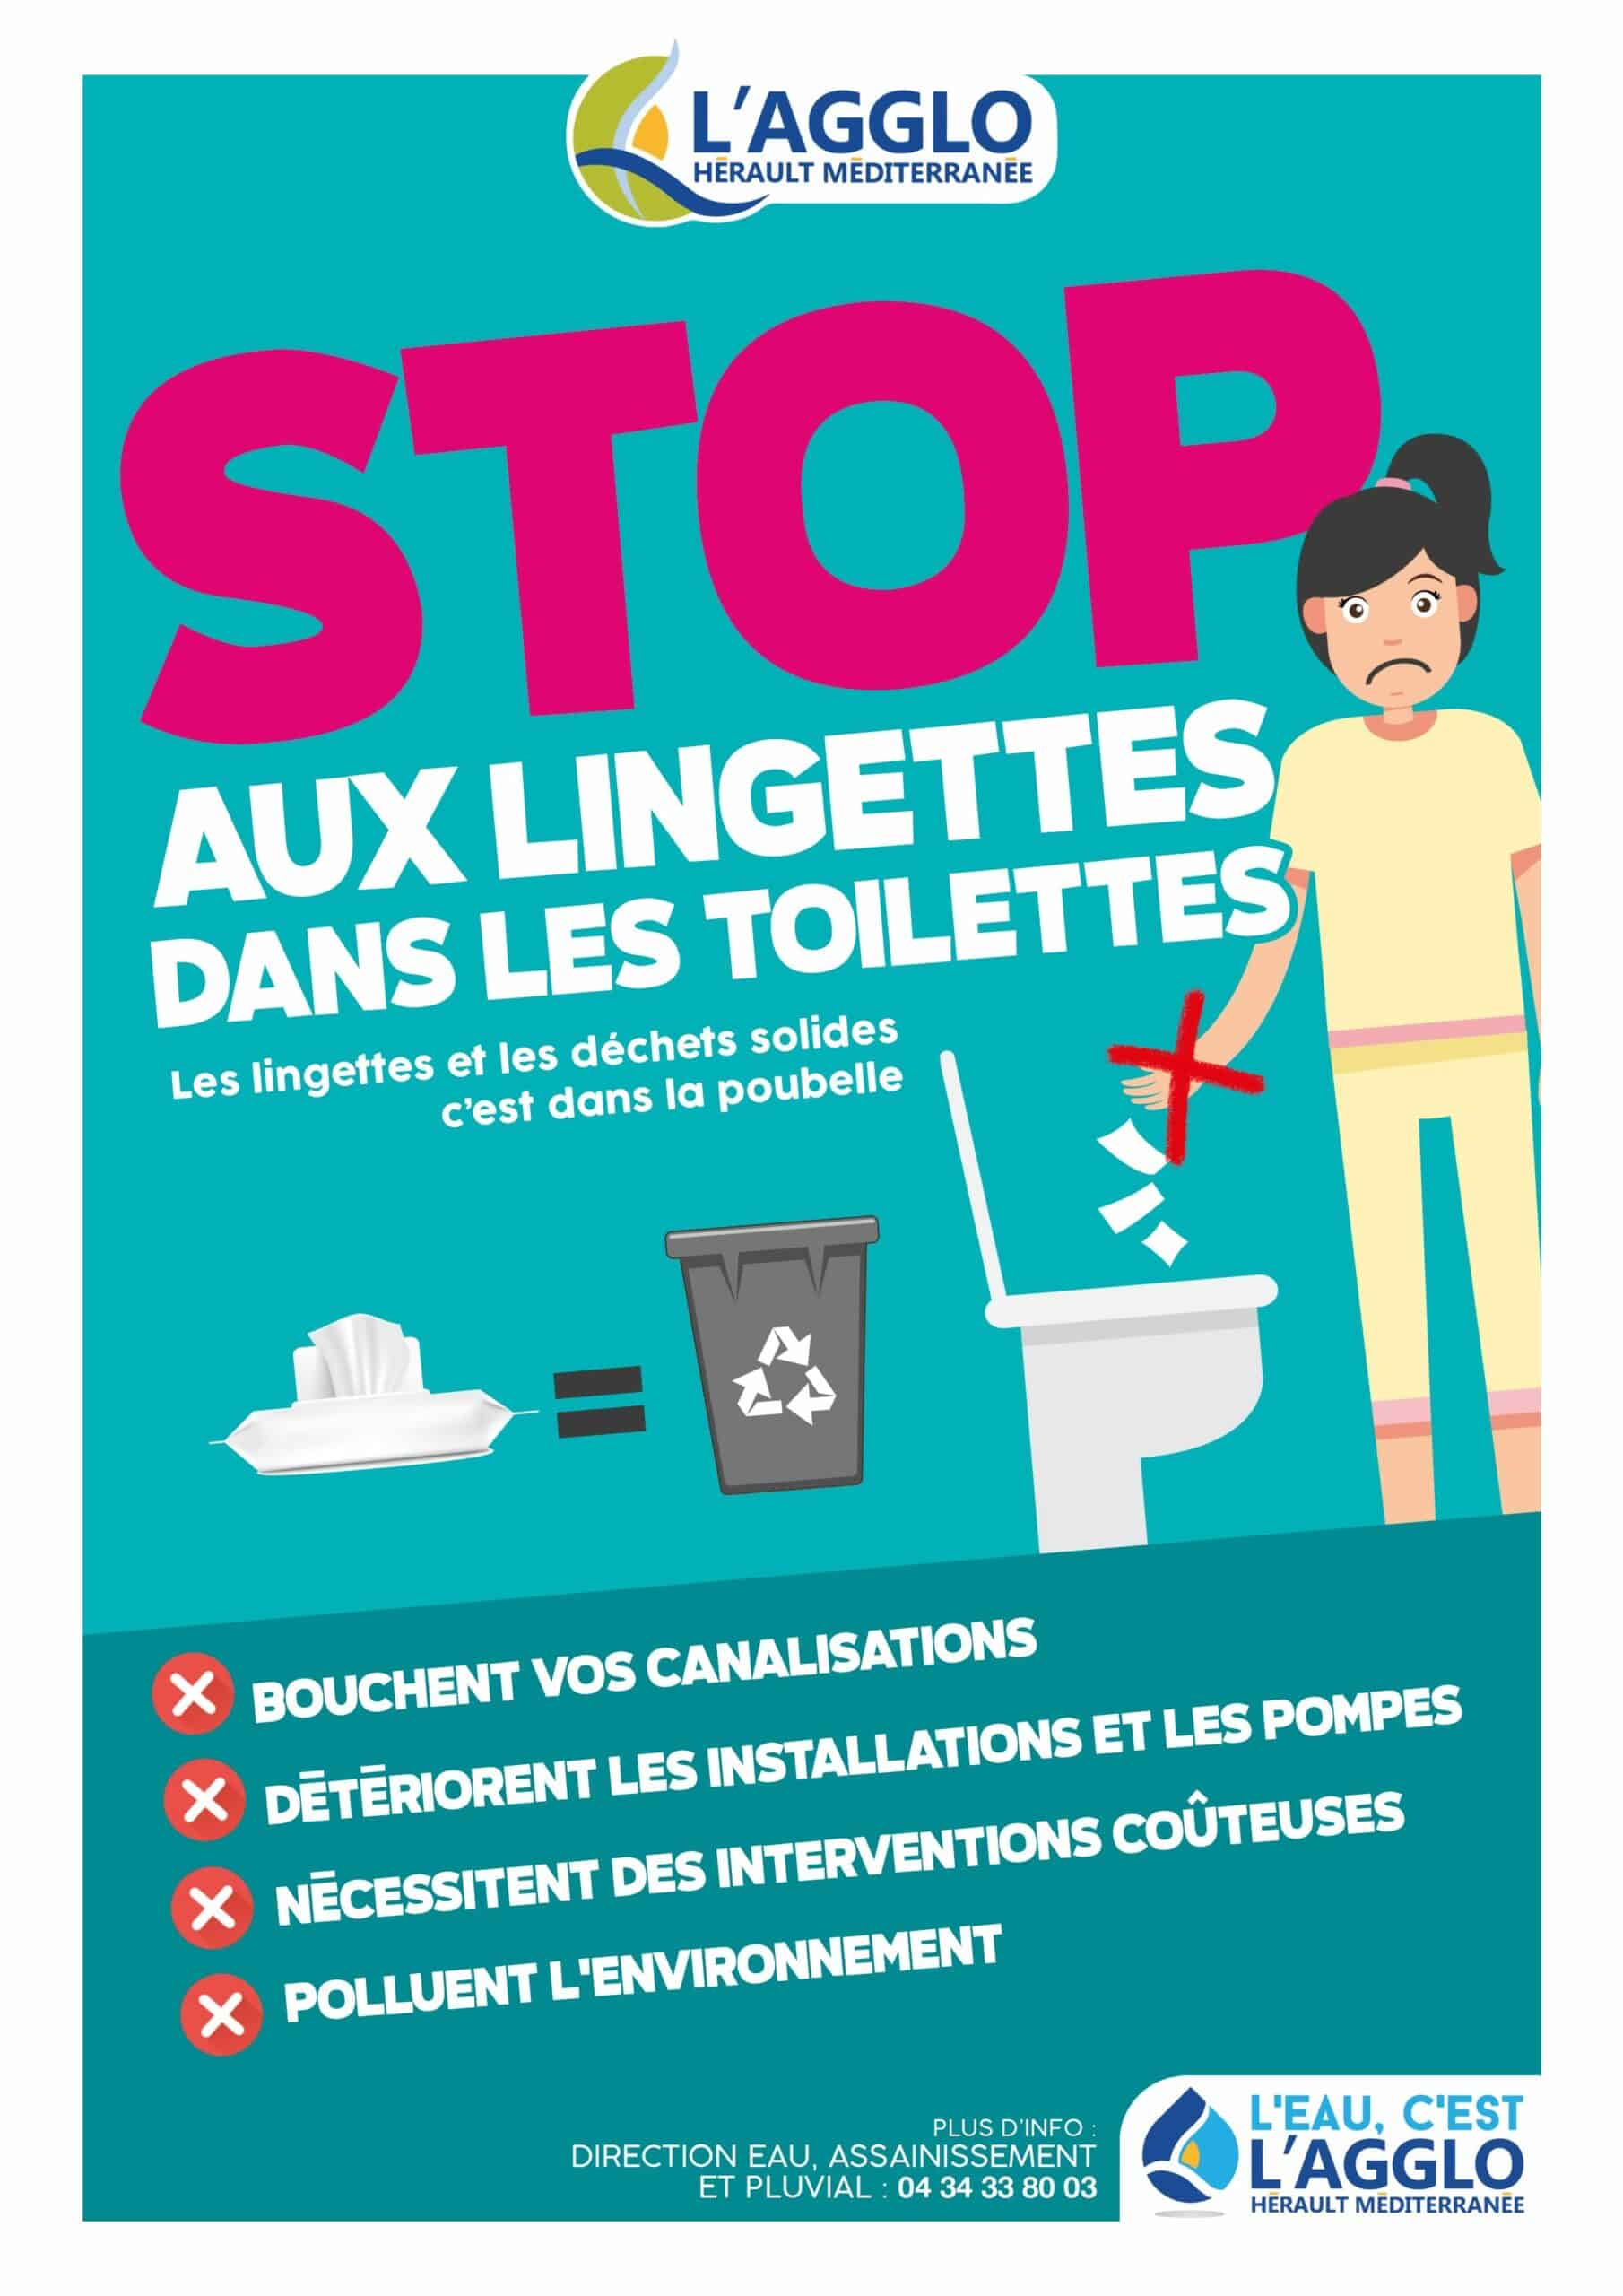 Eau et assainissement : stop aux lingettes dans les toilettes !